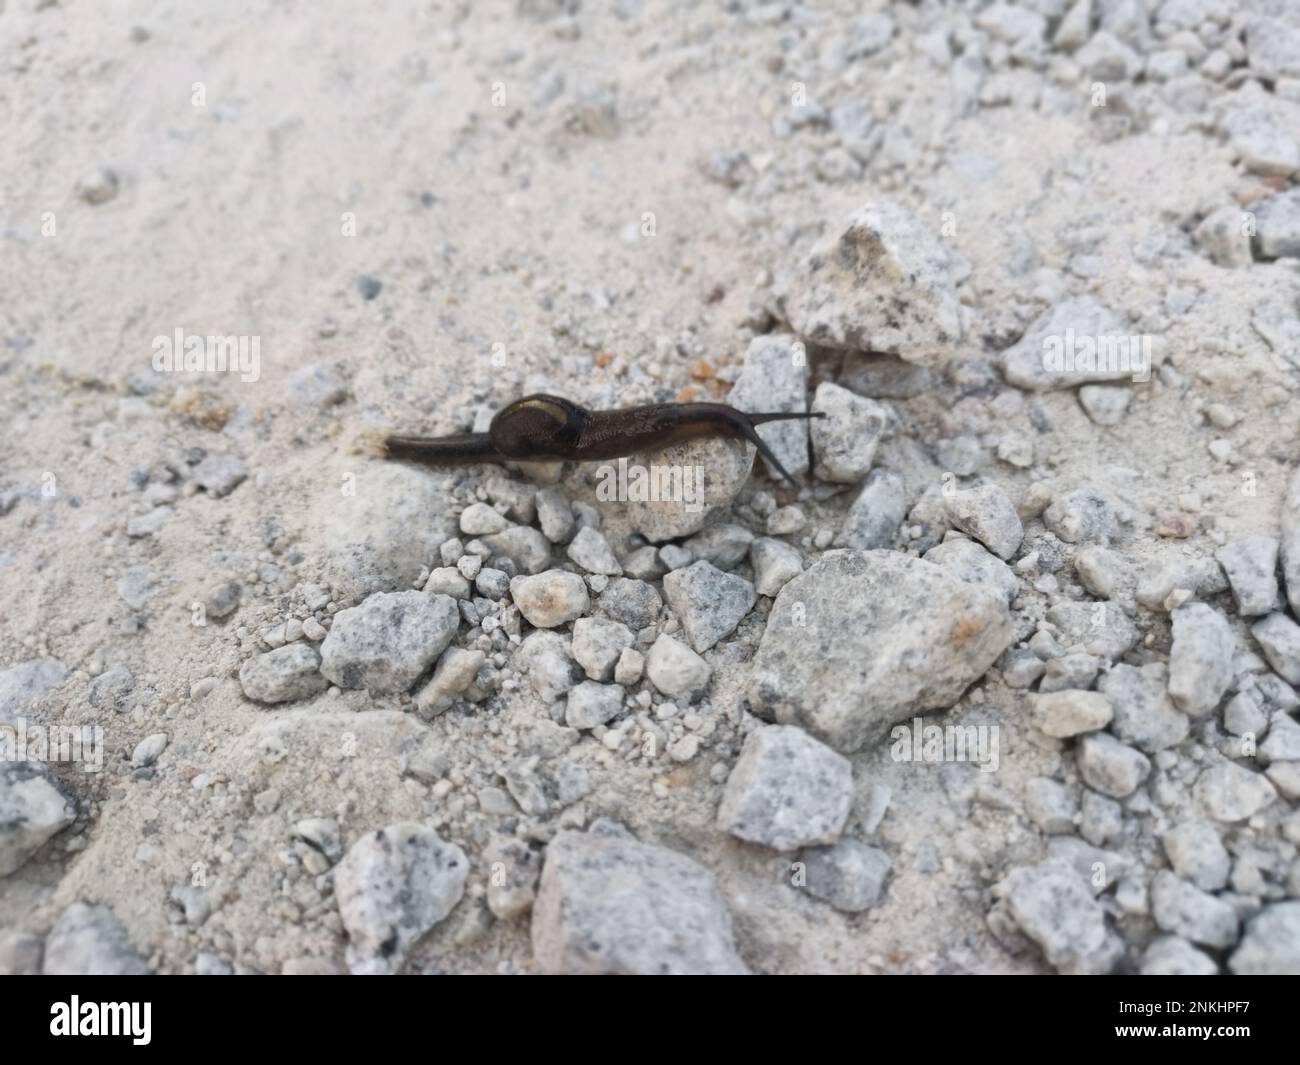 deroceras leave slug crawling on the stony ground Stock Photo